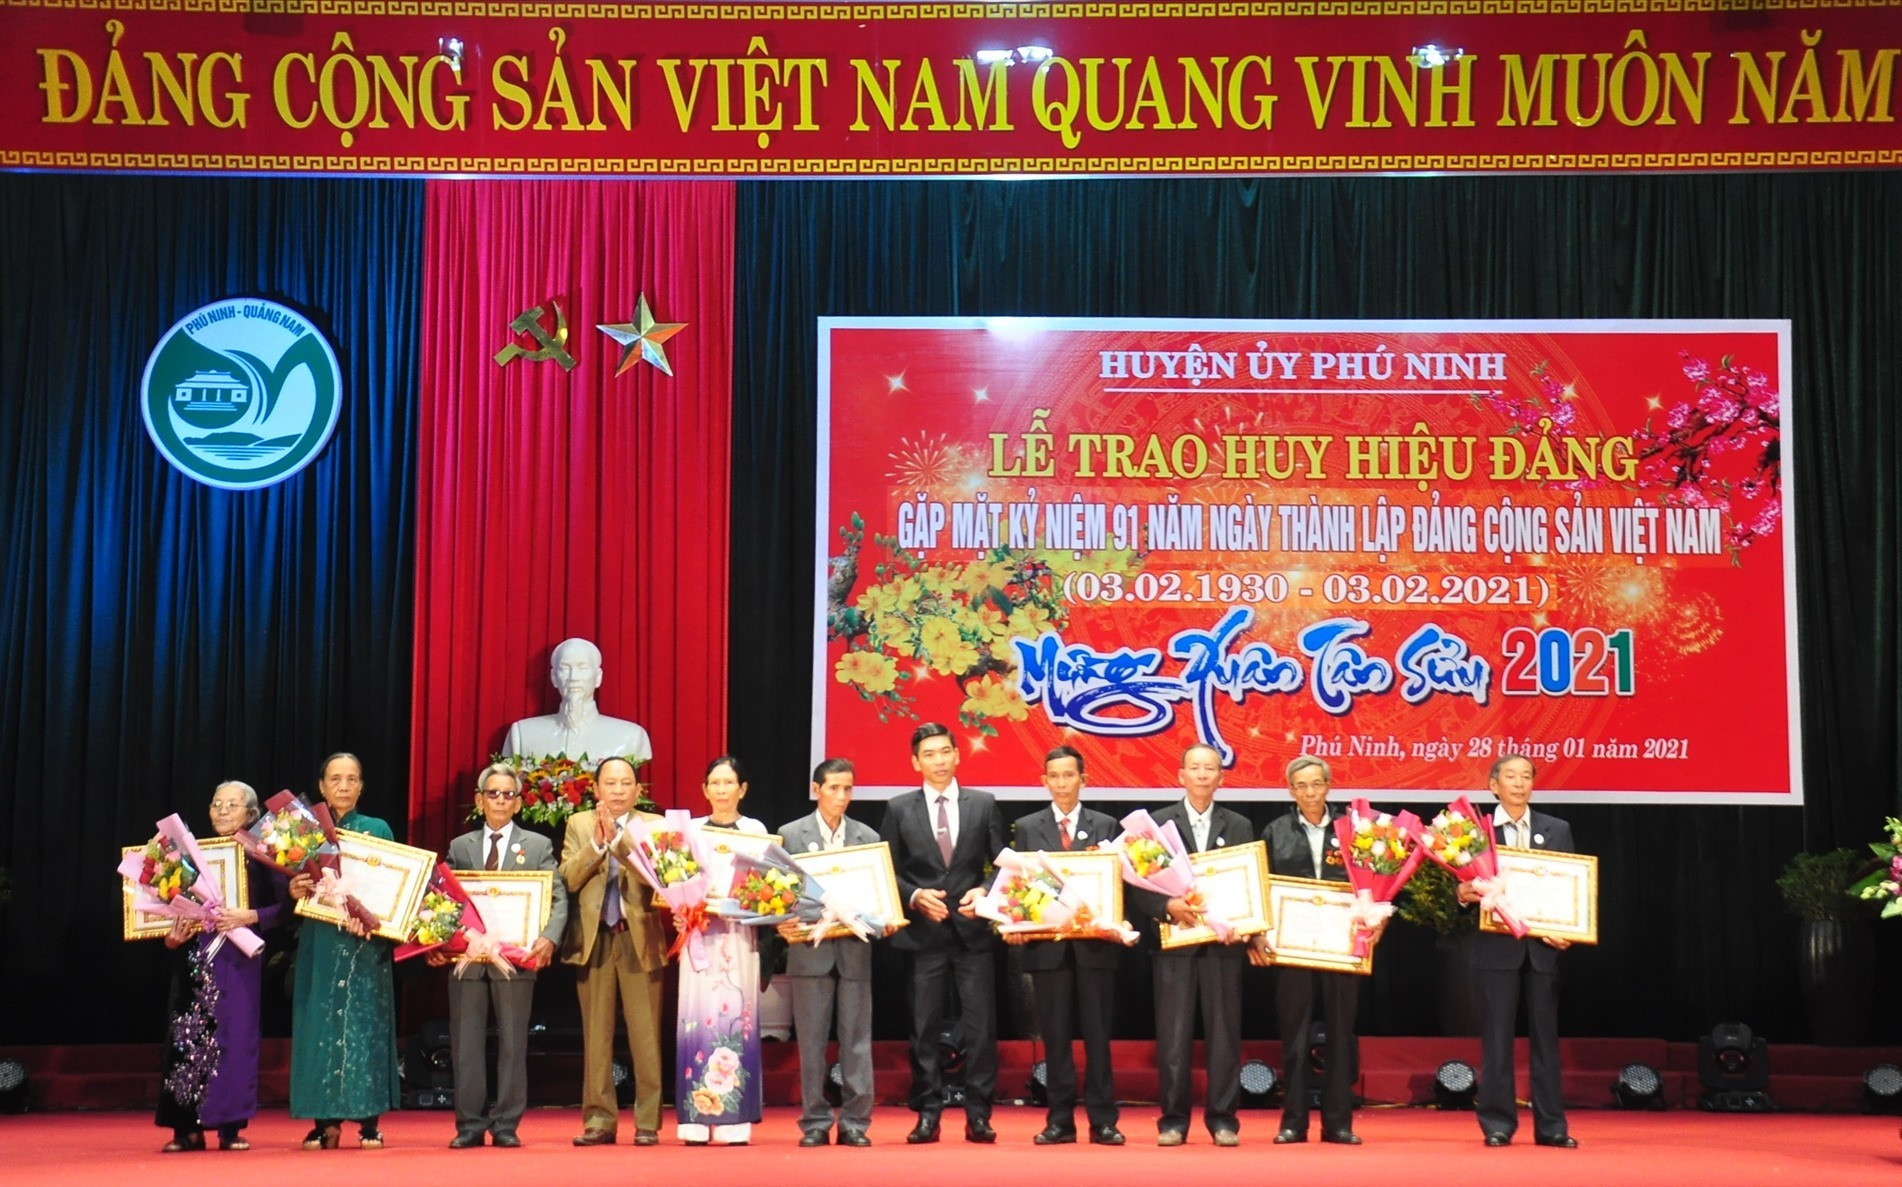 Lãnh đạo huyện Phú Ninh trao Huy hiệu Đảng cho các đảng viên 55, 50 và 40 năm tuổi Đảng. Ảnh: VINH ANH